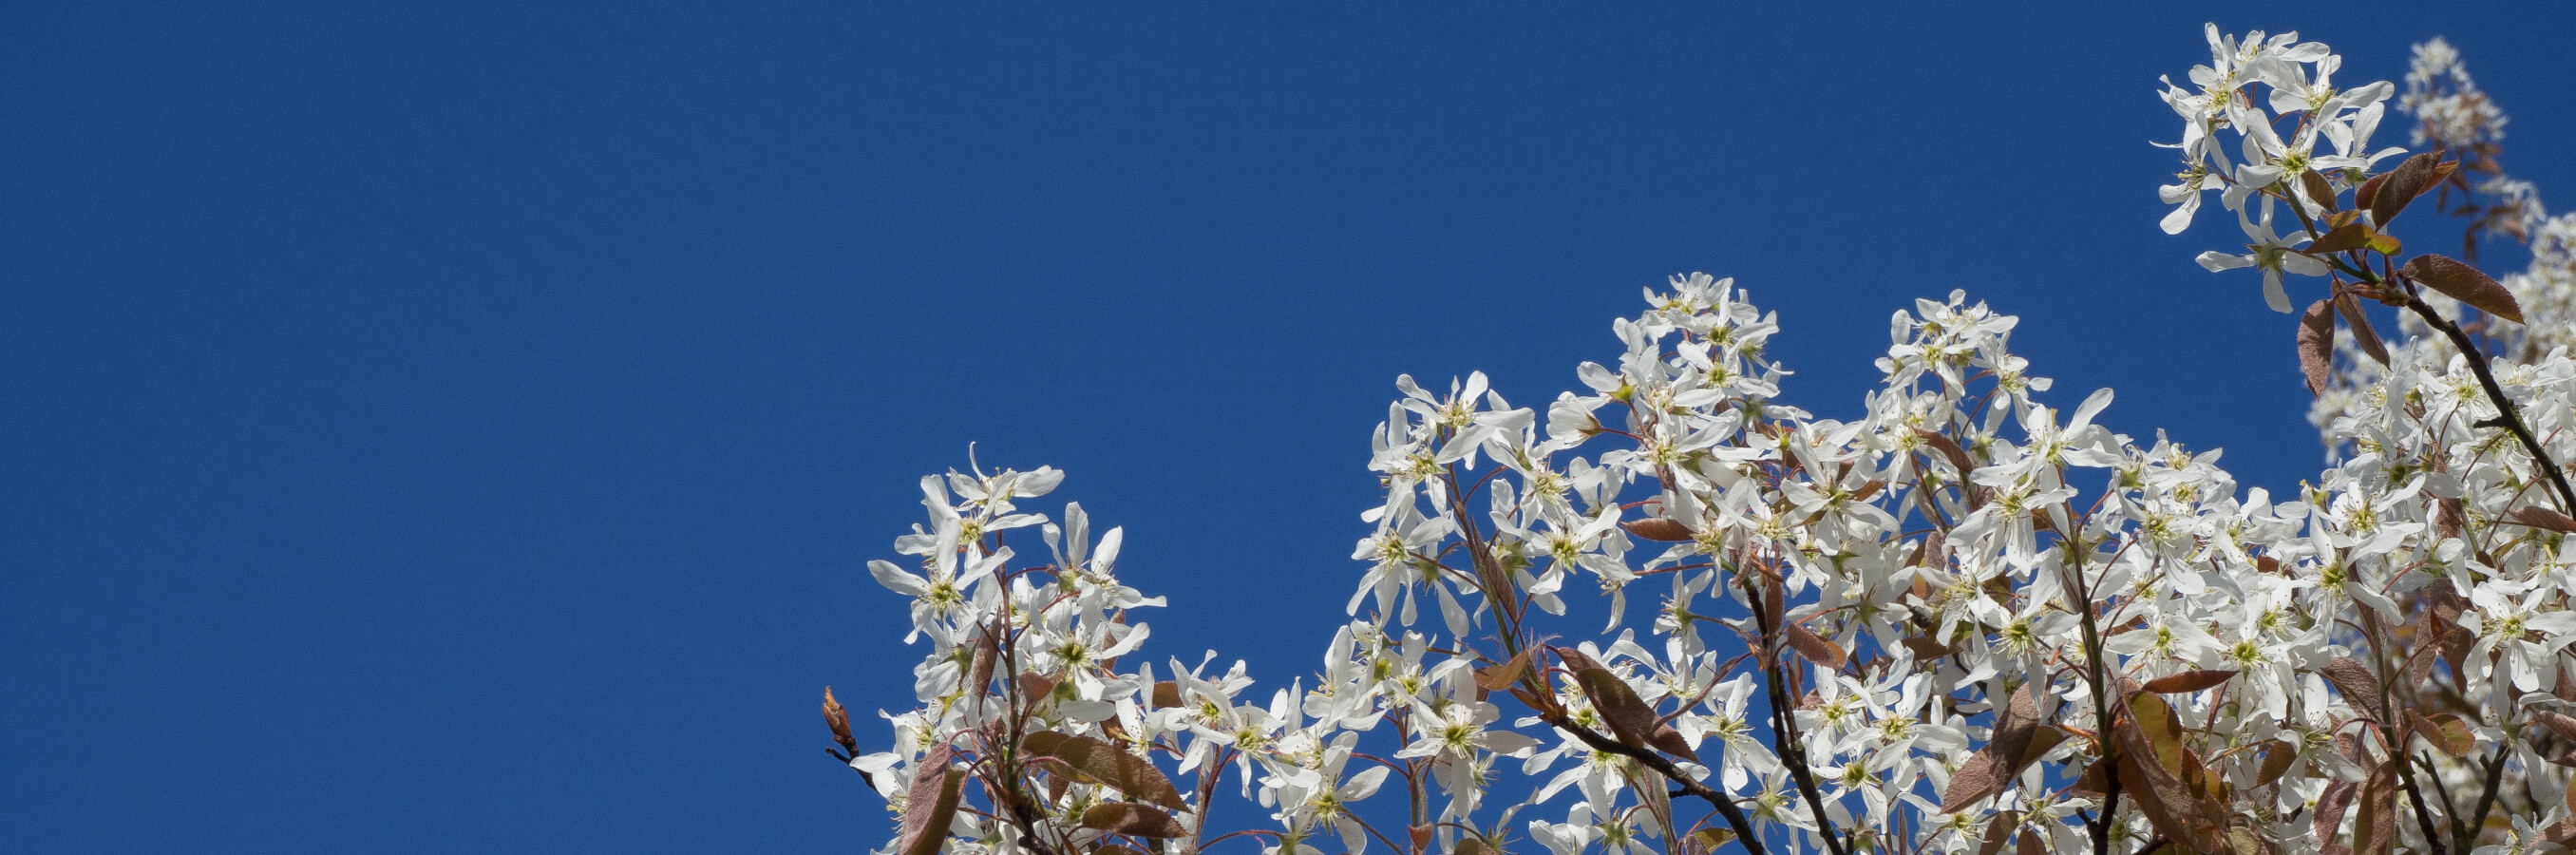 Heide Bussum krentenboom met bloemen - lezen over compassie